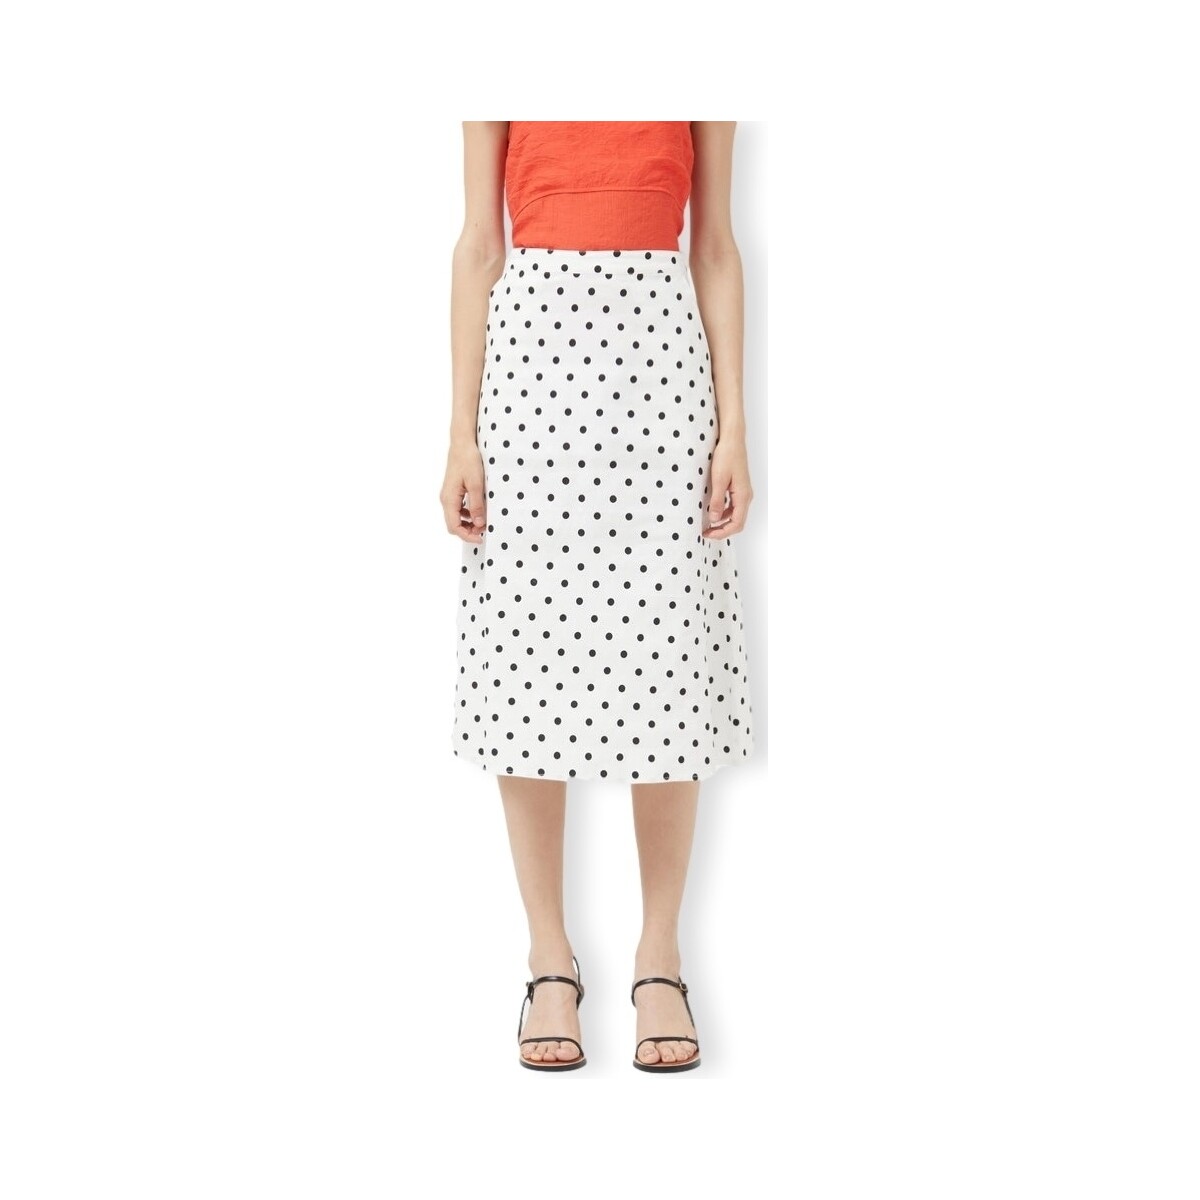 Vêtements Femme Allée Du Foulard COMPAÑIA FANTÁSTICA Skirt 11020 - Polka Dots Blanc